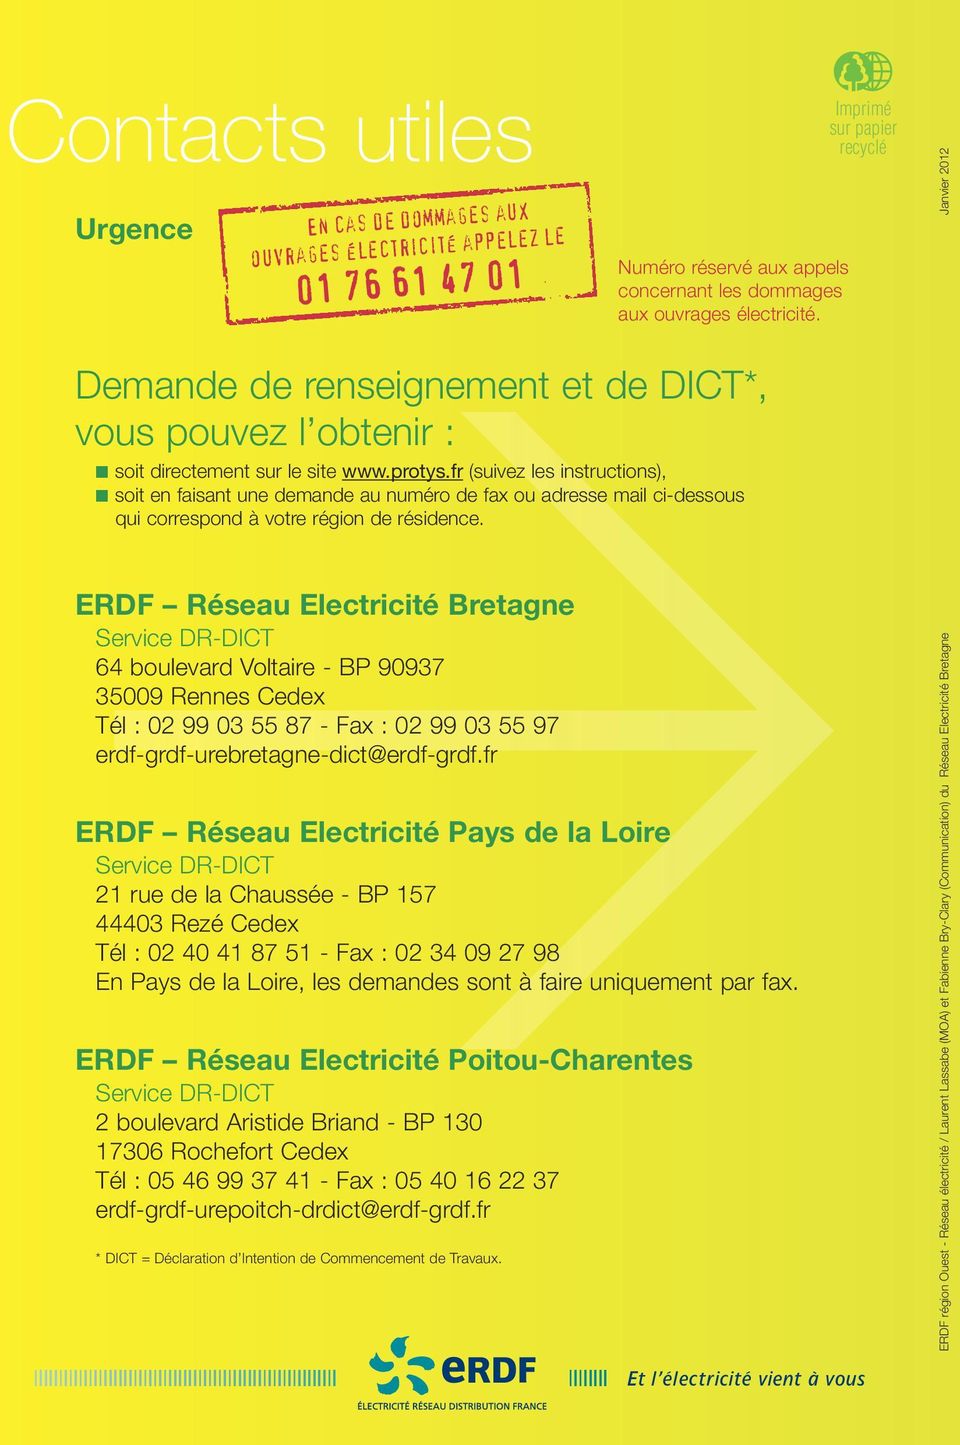 ERDF Réseau Electricité Bretagne Service DR-DICT 64 boulevard Voltaire - BP 90937 35009 Rennes Cedex Tél : 02 99 03 55 87 - Fax : 02 99 03 55 97 erdf-grdf-urebretagne-dict@erdf-grdf.